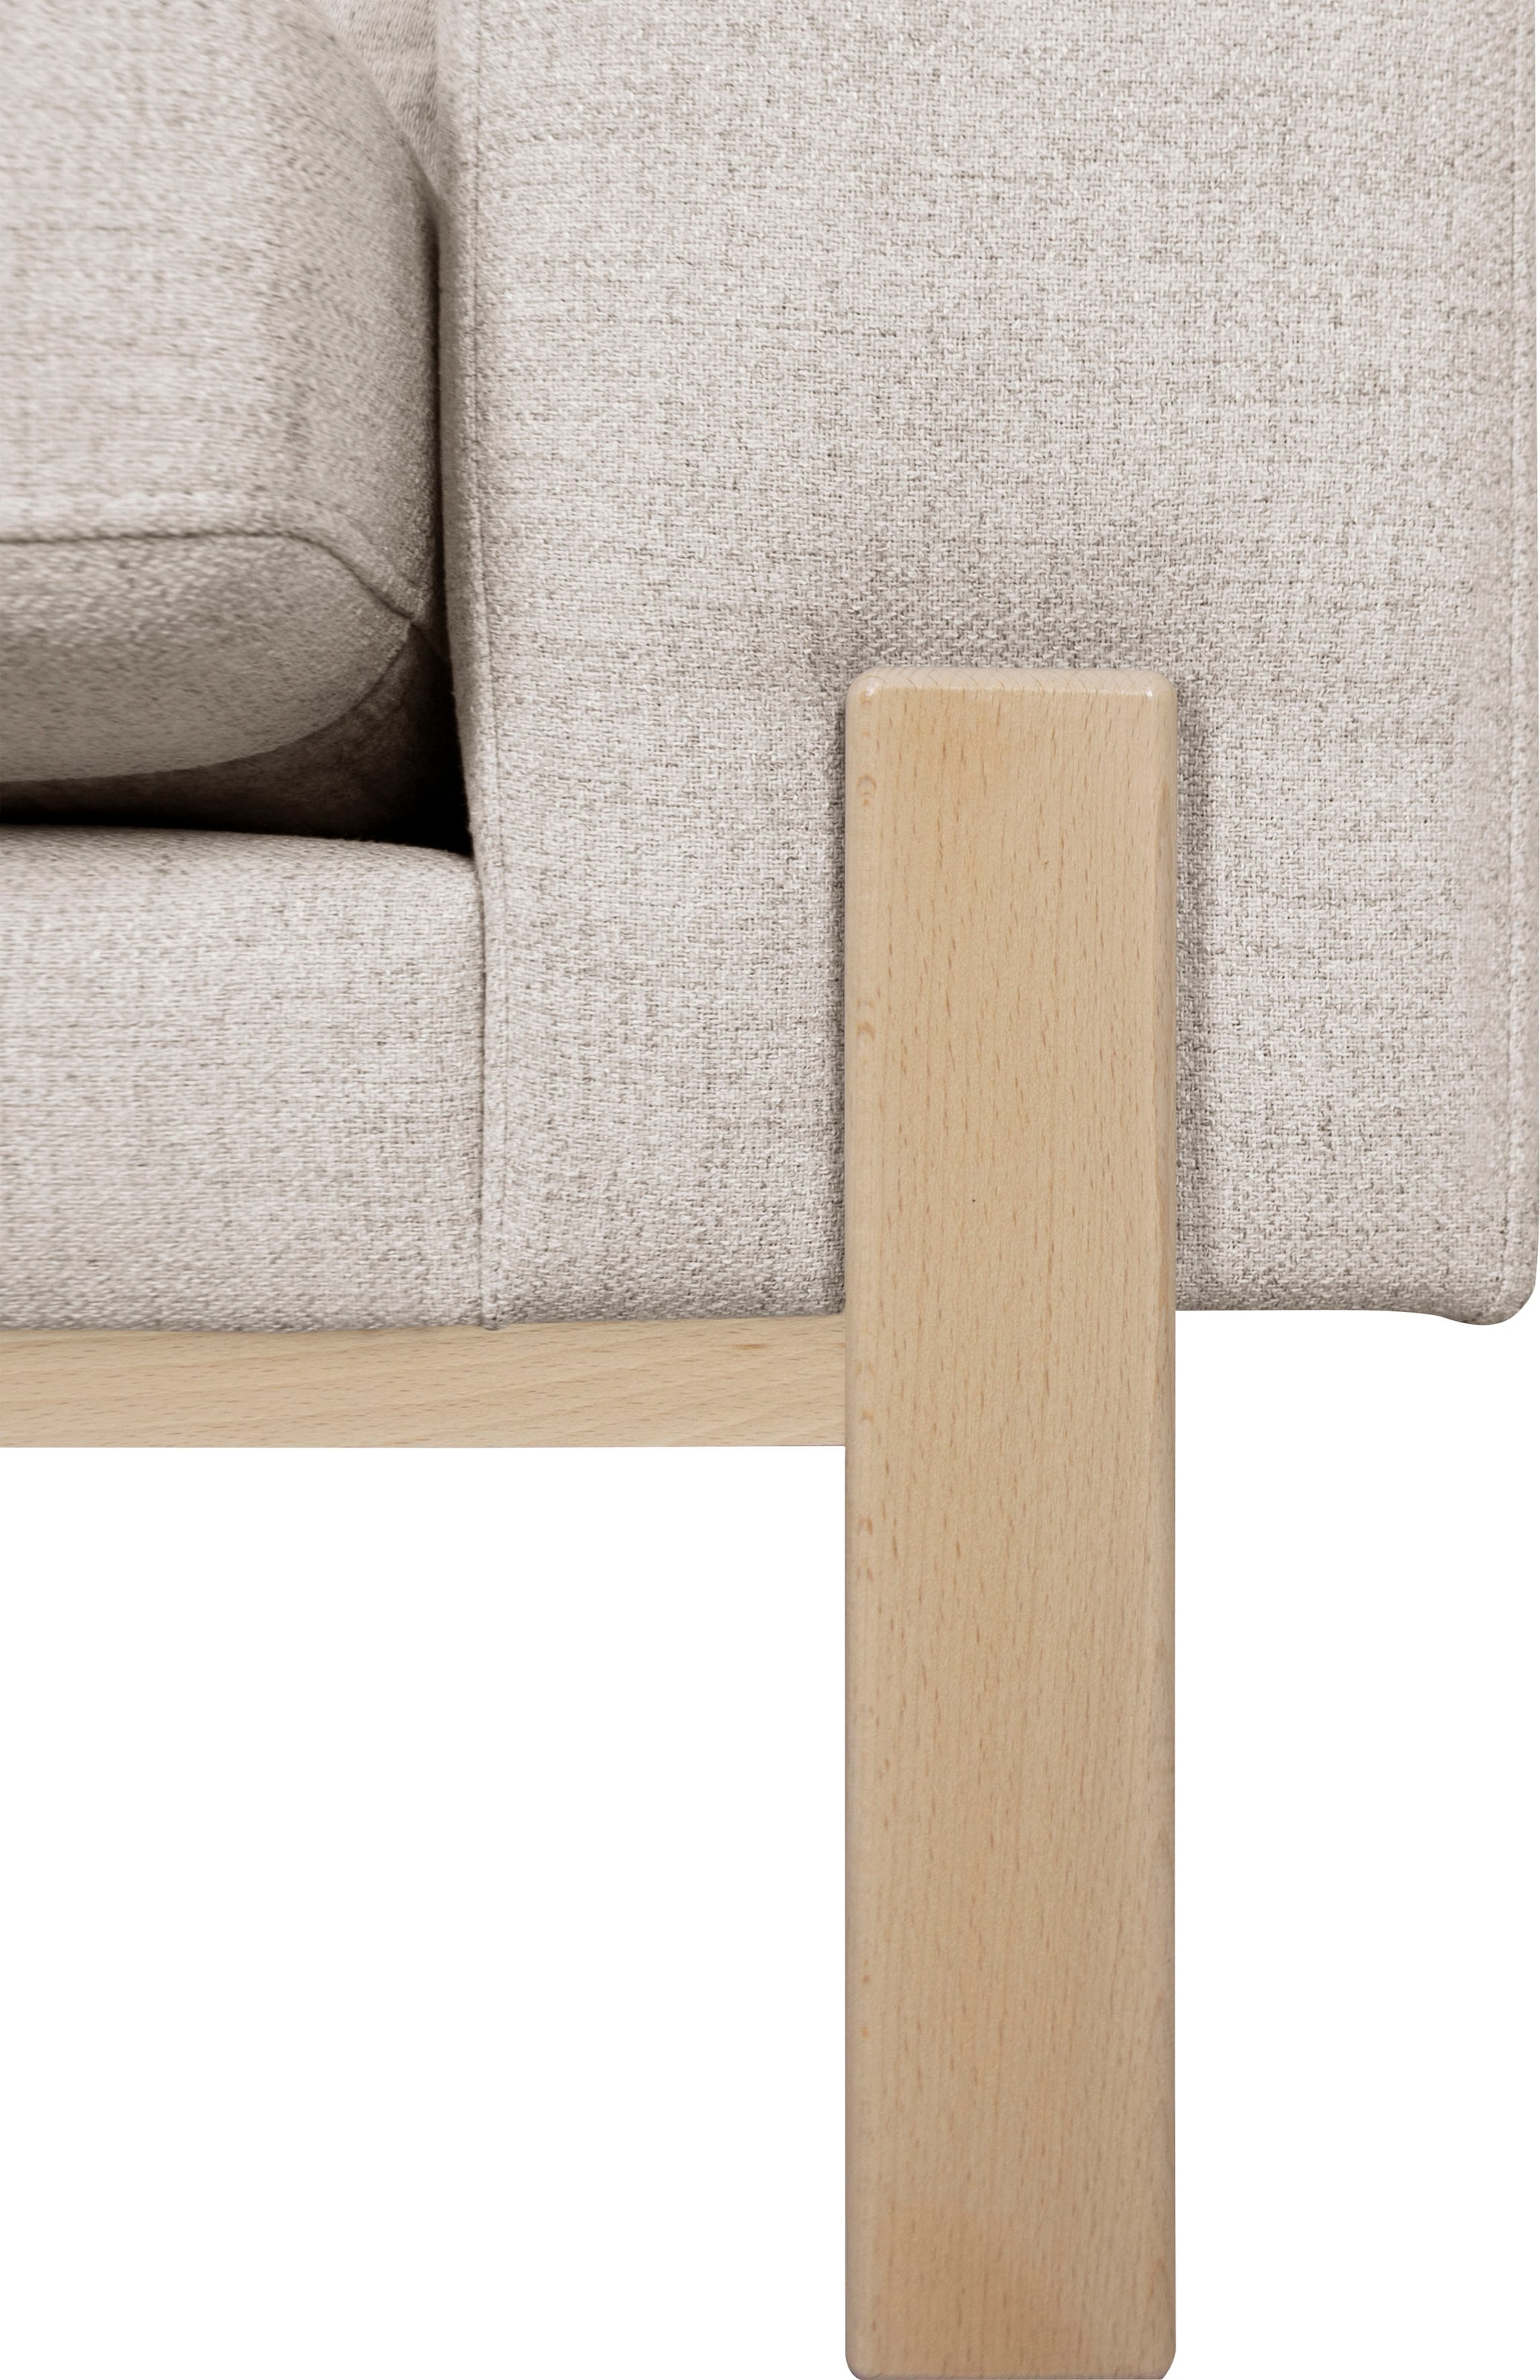 GOODproduct 2-Sitzer »Hanne«, Verschiedene Bezugsqualitäten: Baumwolle, recyceltes Polyester